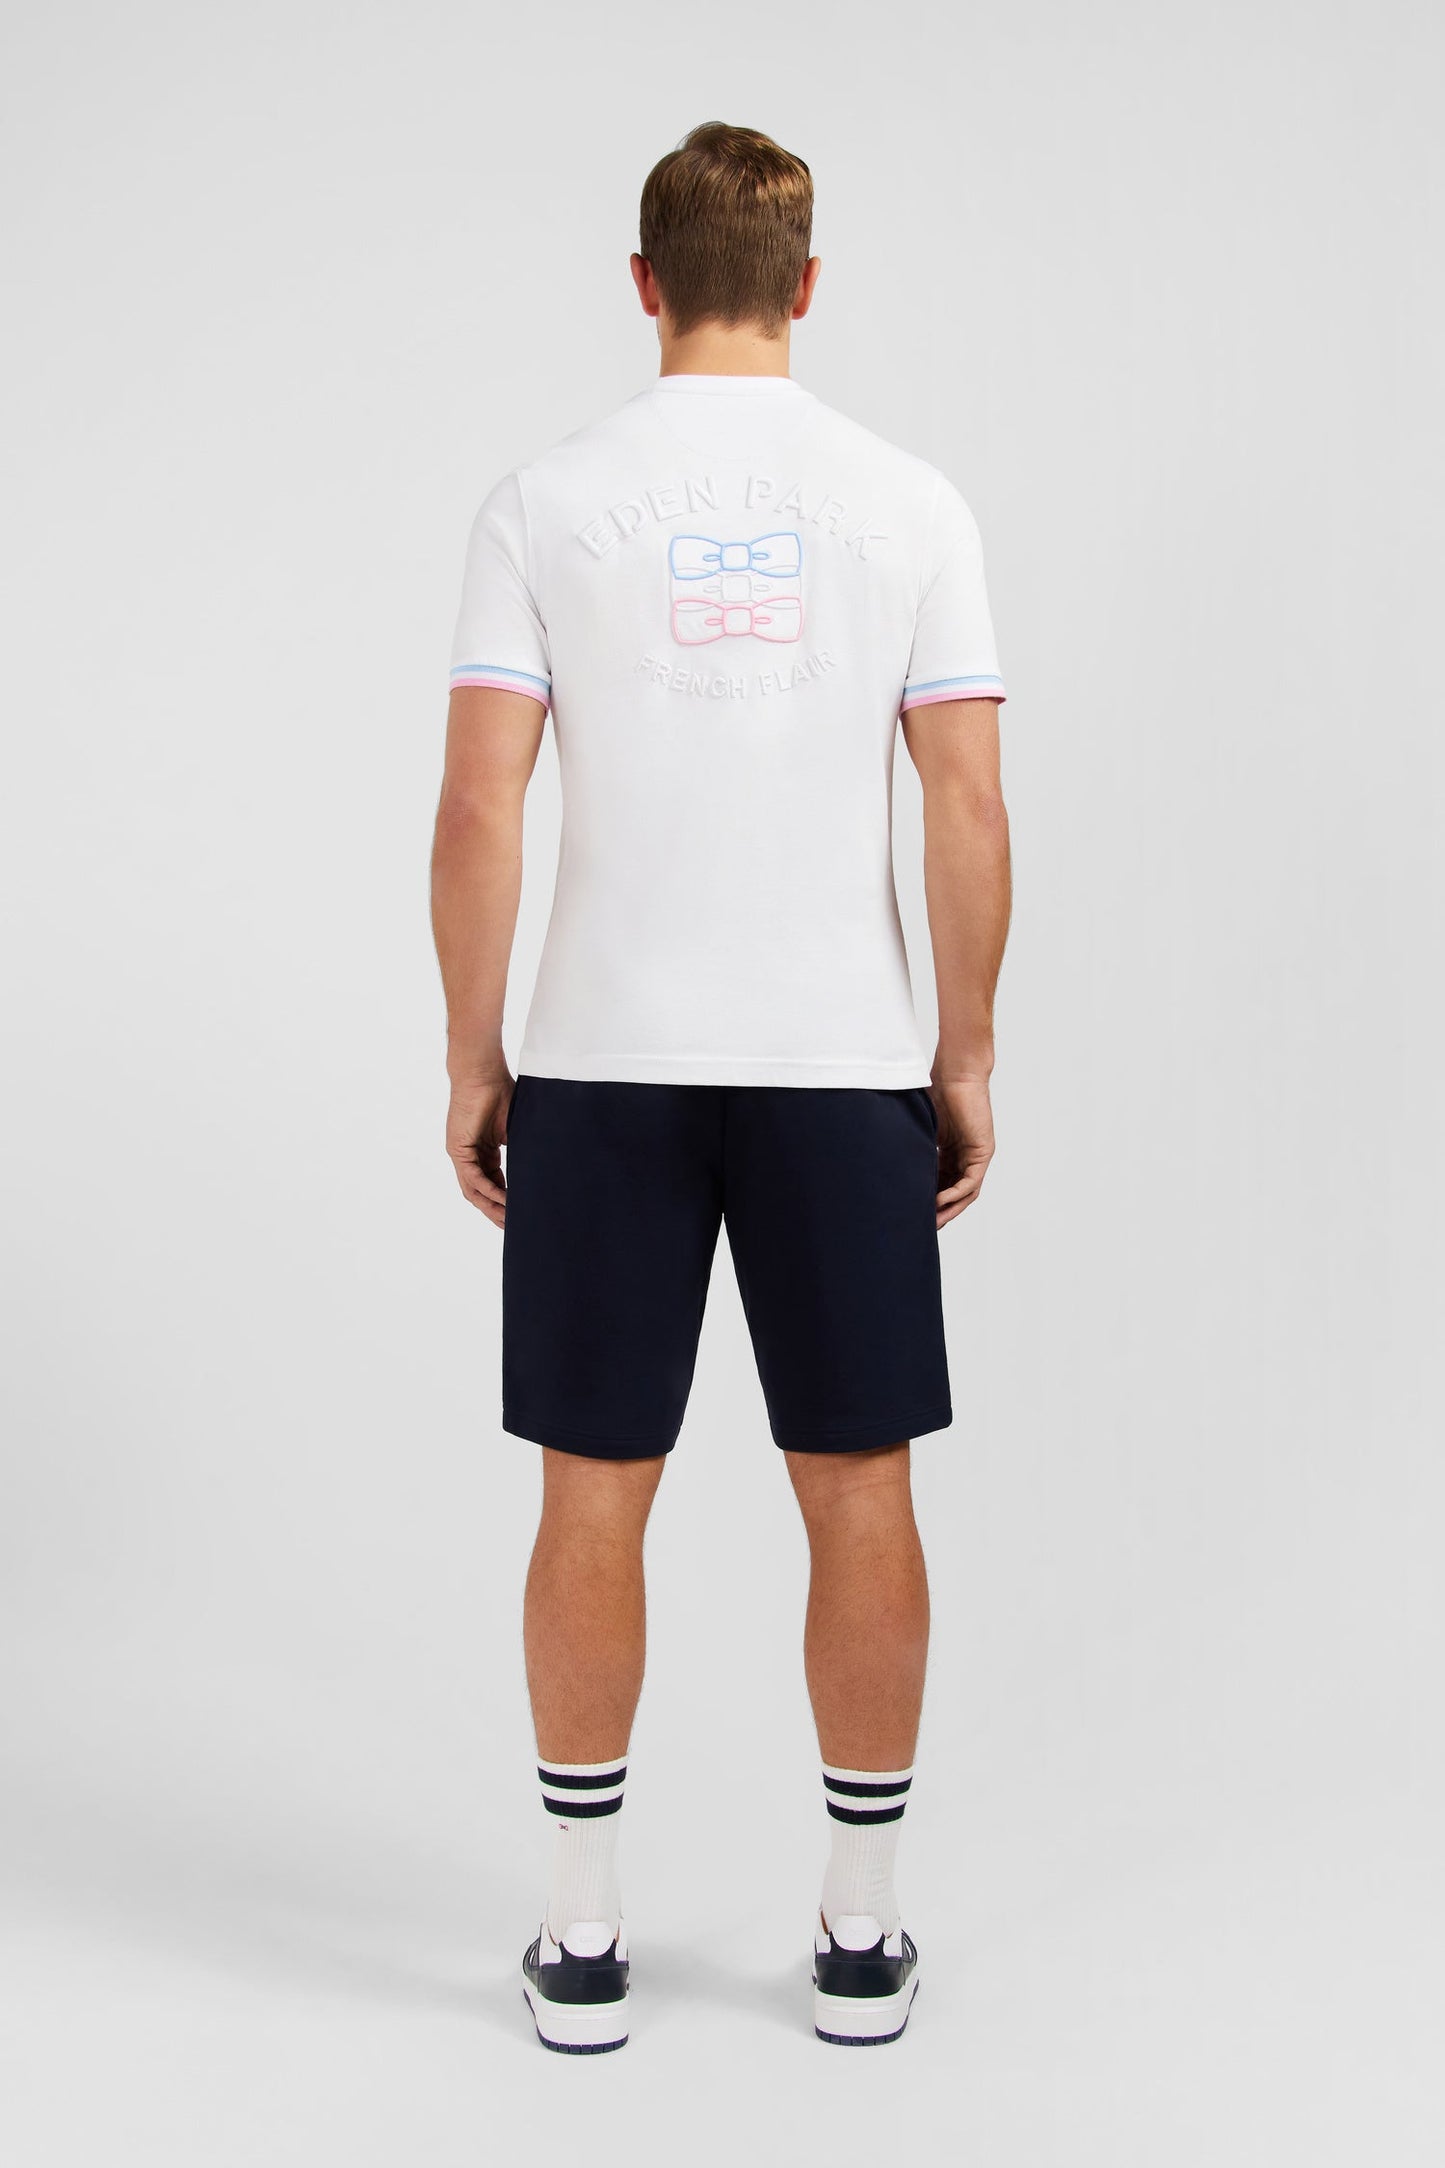 T-shirt manches courtes blanc avec logo reliefé - Image 6